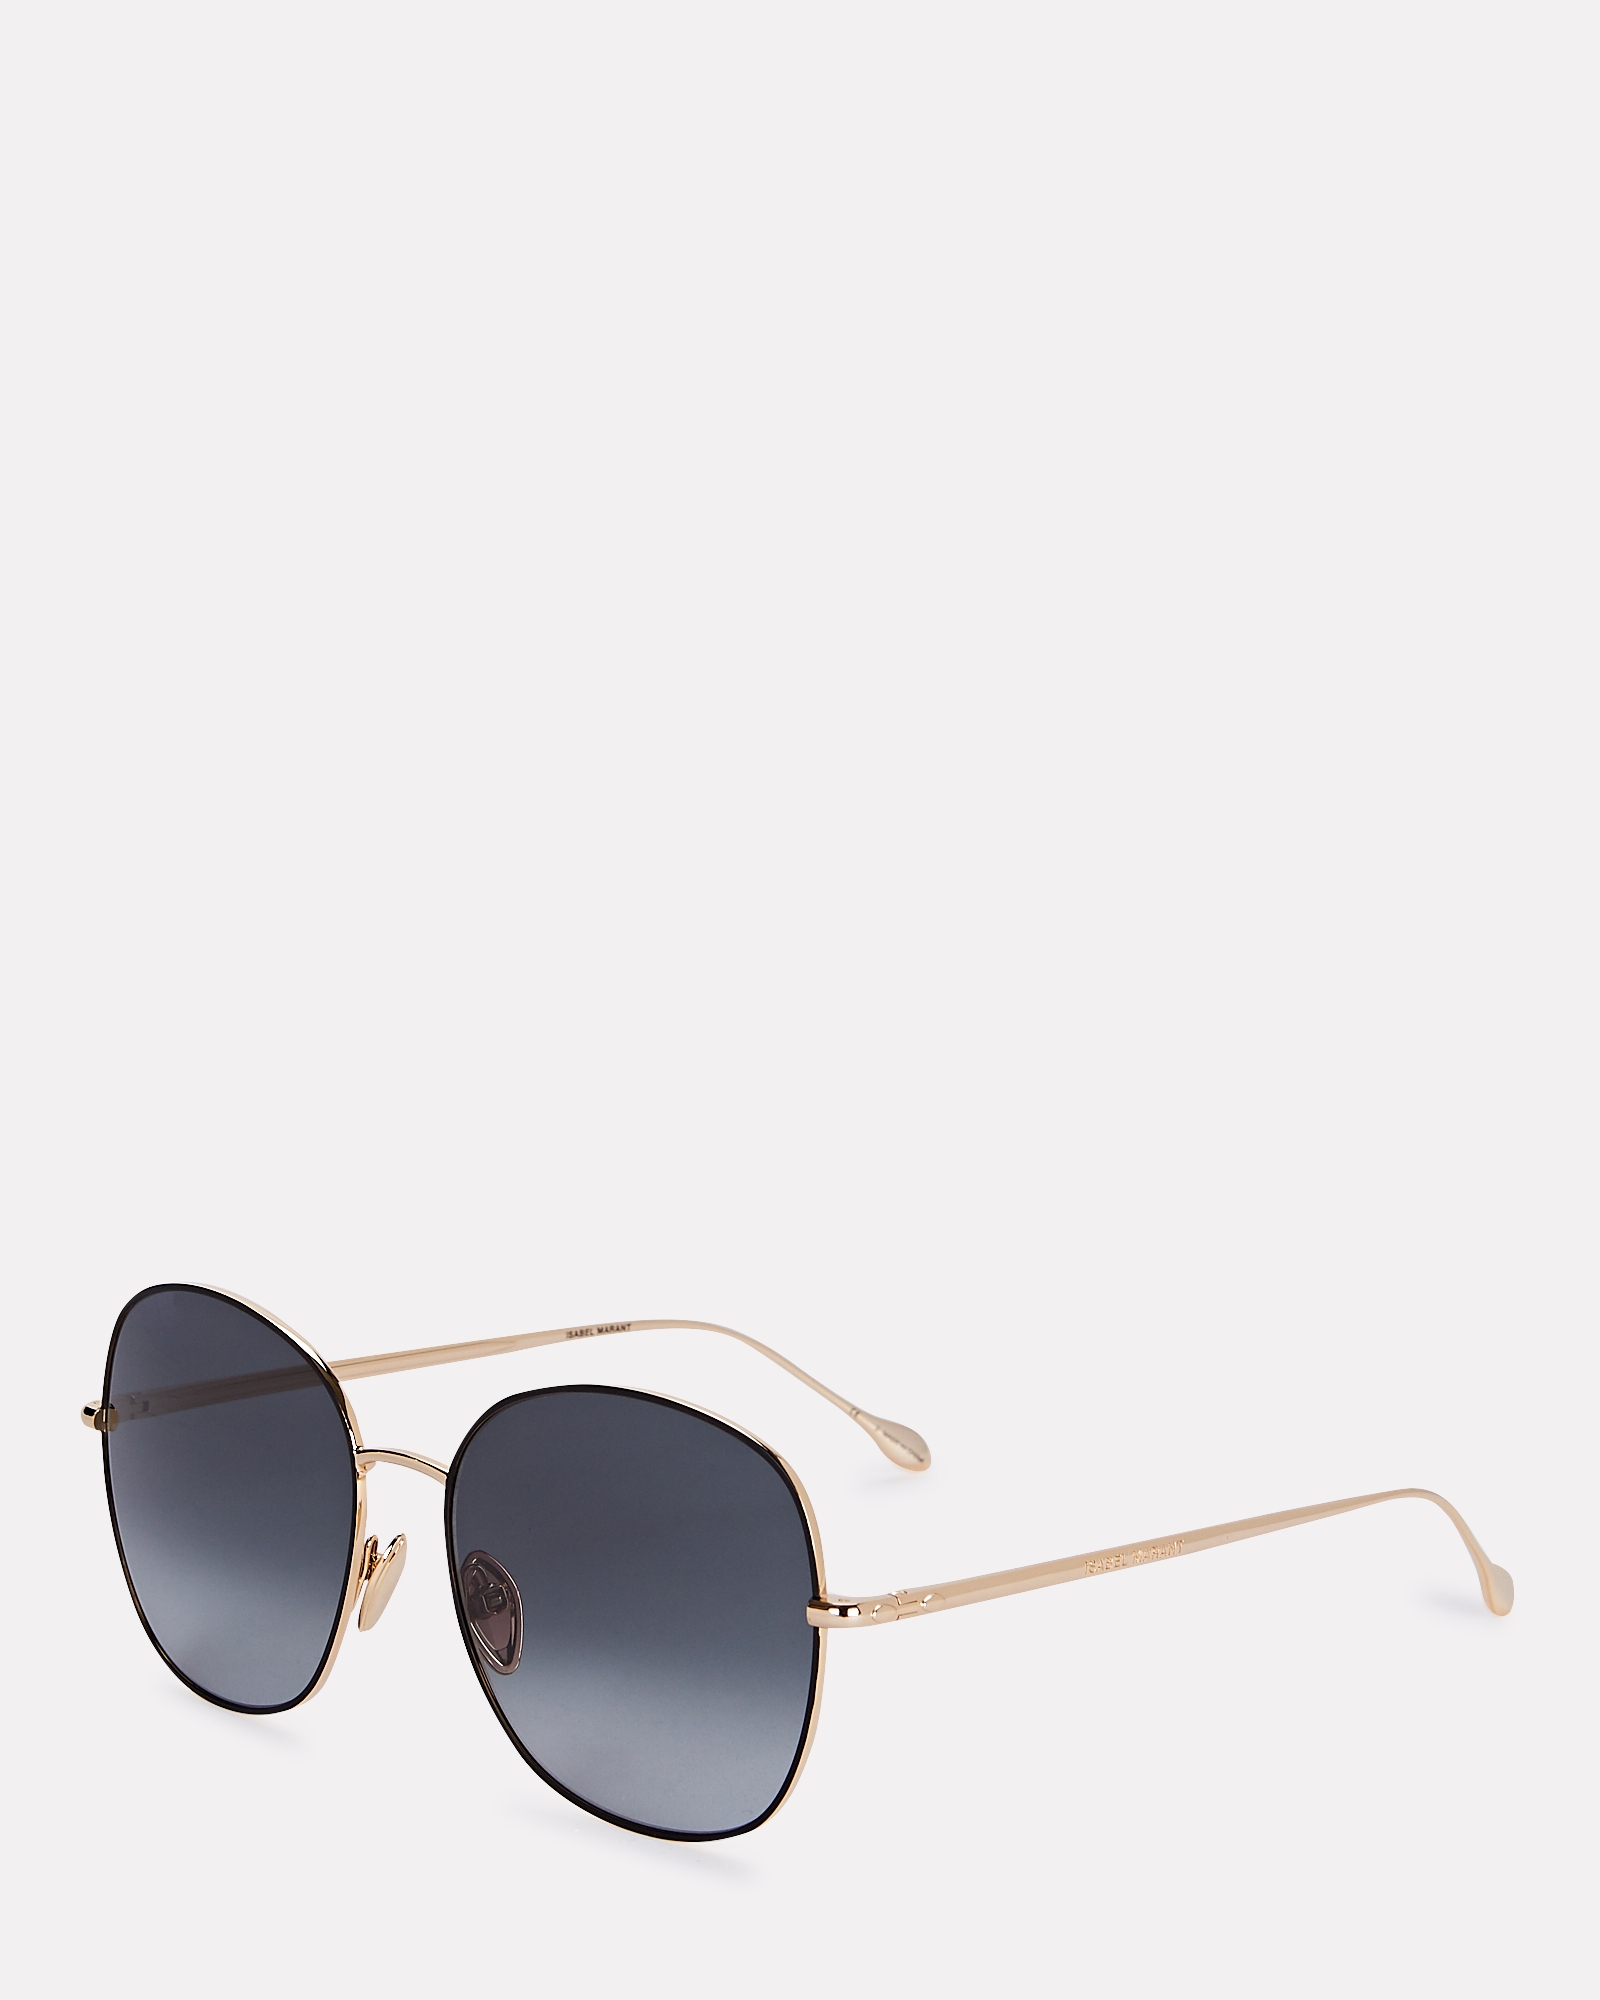 Isabel Marant Edgy Oversized Round Sunglasses | INTERMIX®